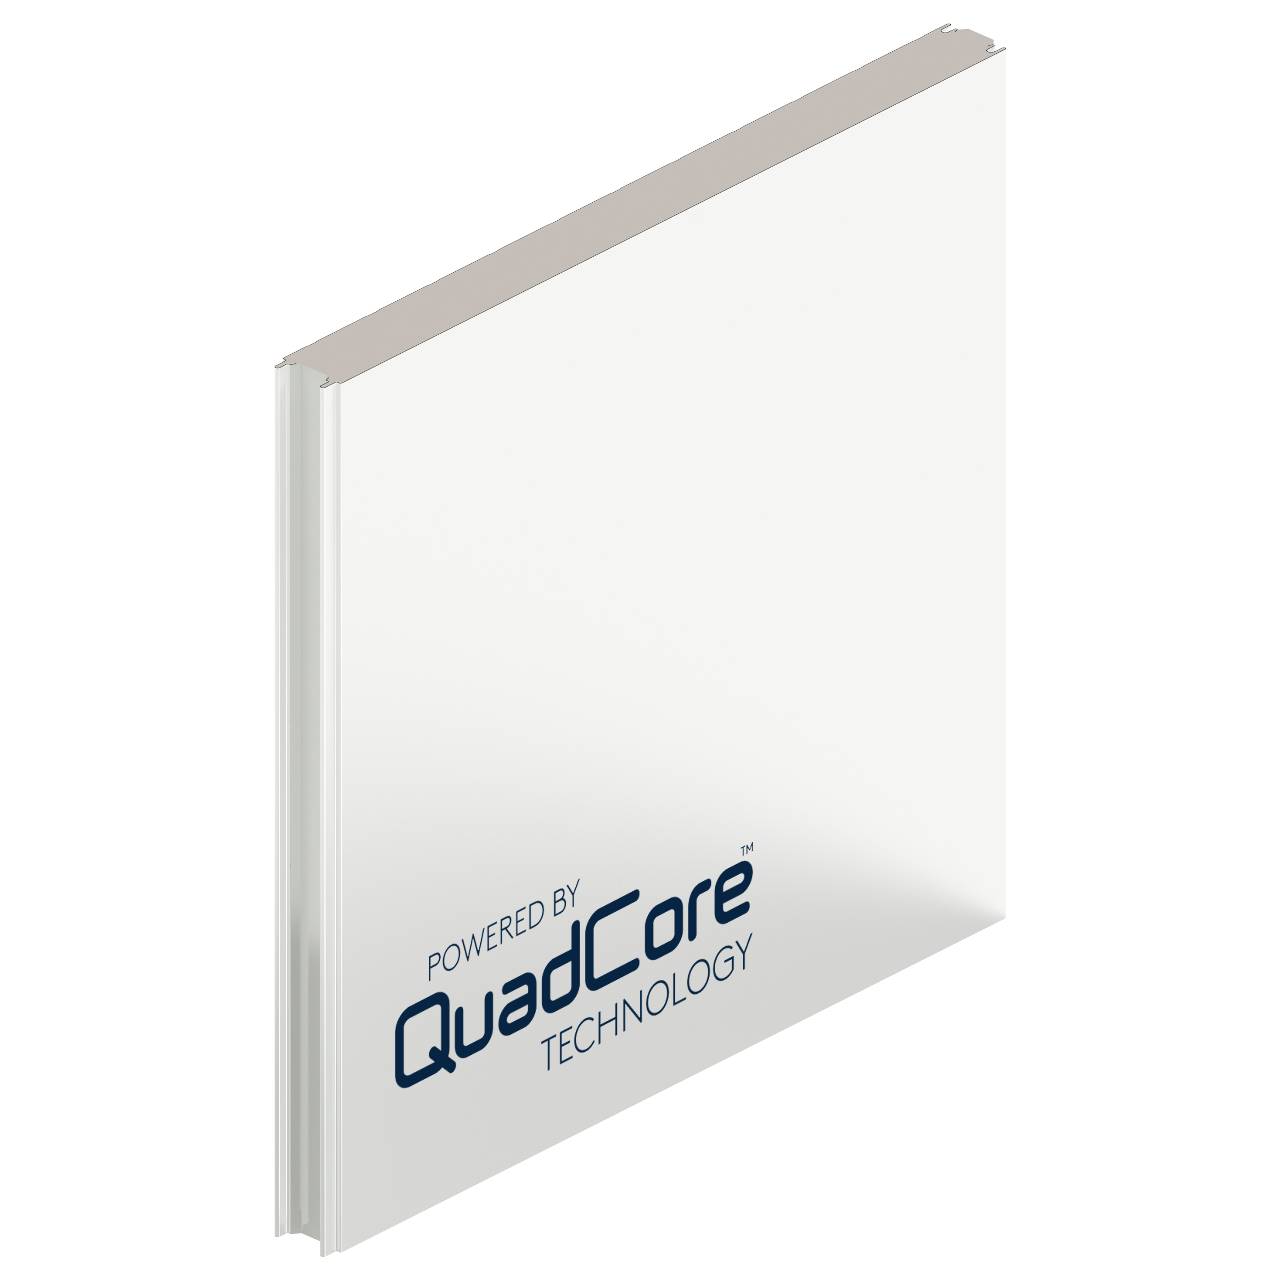 QuadCore Coldstore Panel System